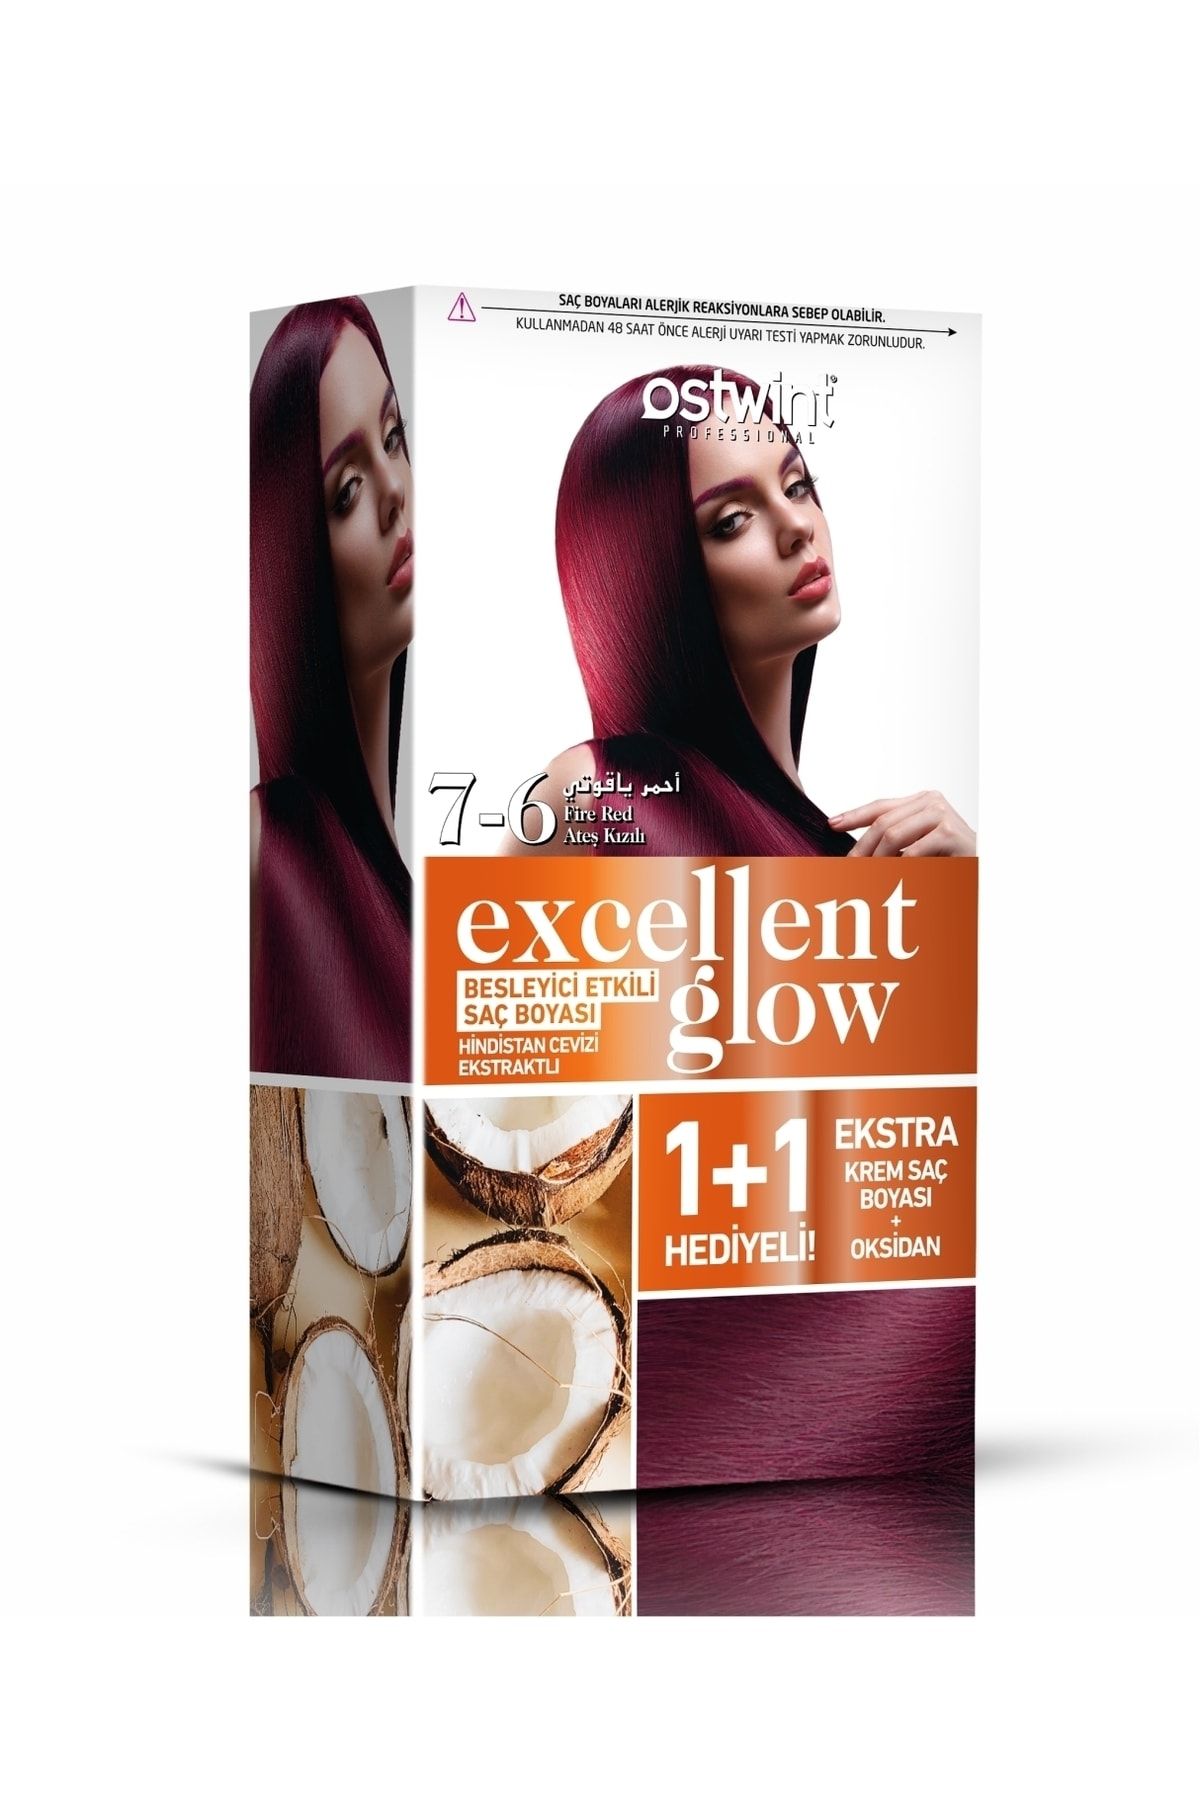 Ostwint Excellent Glow 1+1 Hediyeli Saç Boyası Seti No.7.6 Ateş Kızılı